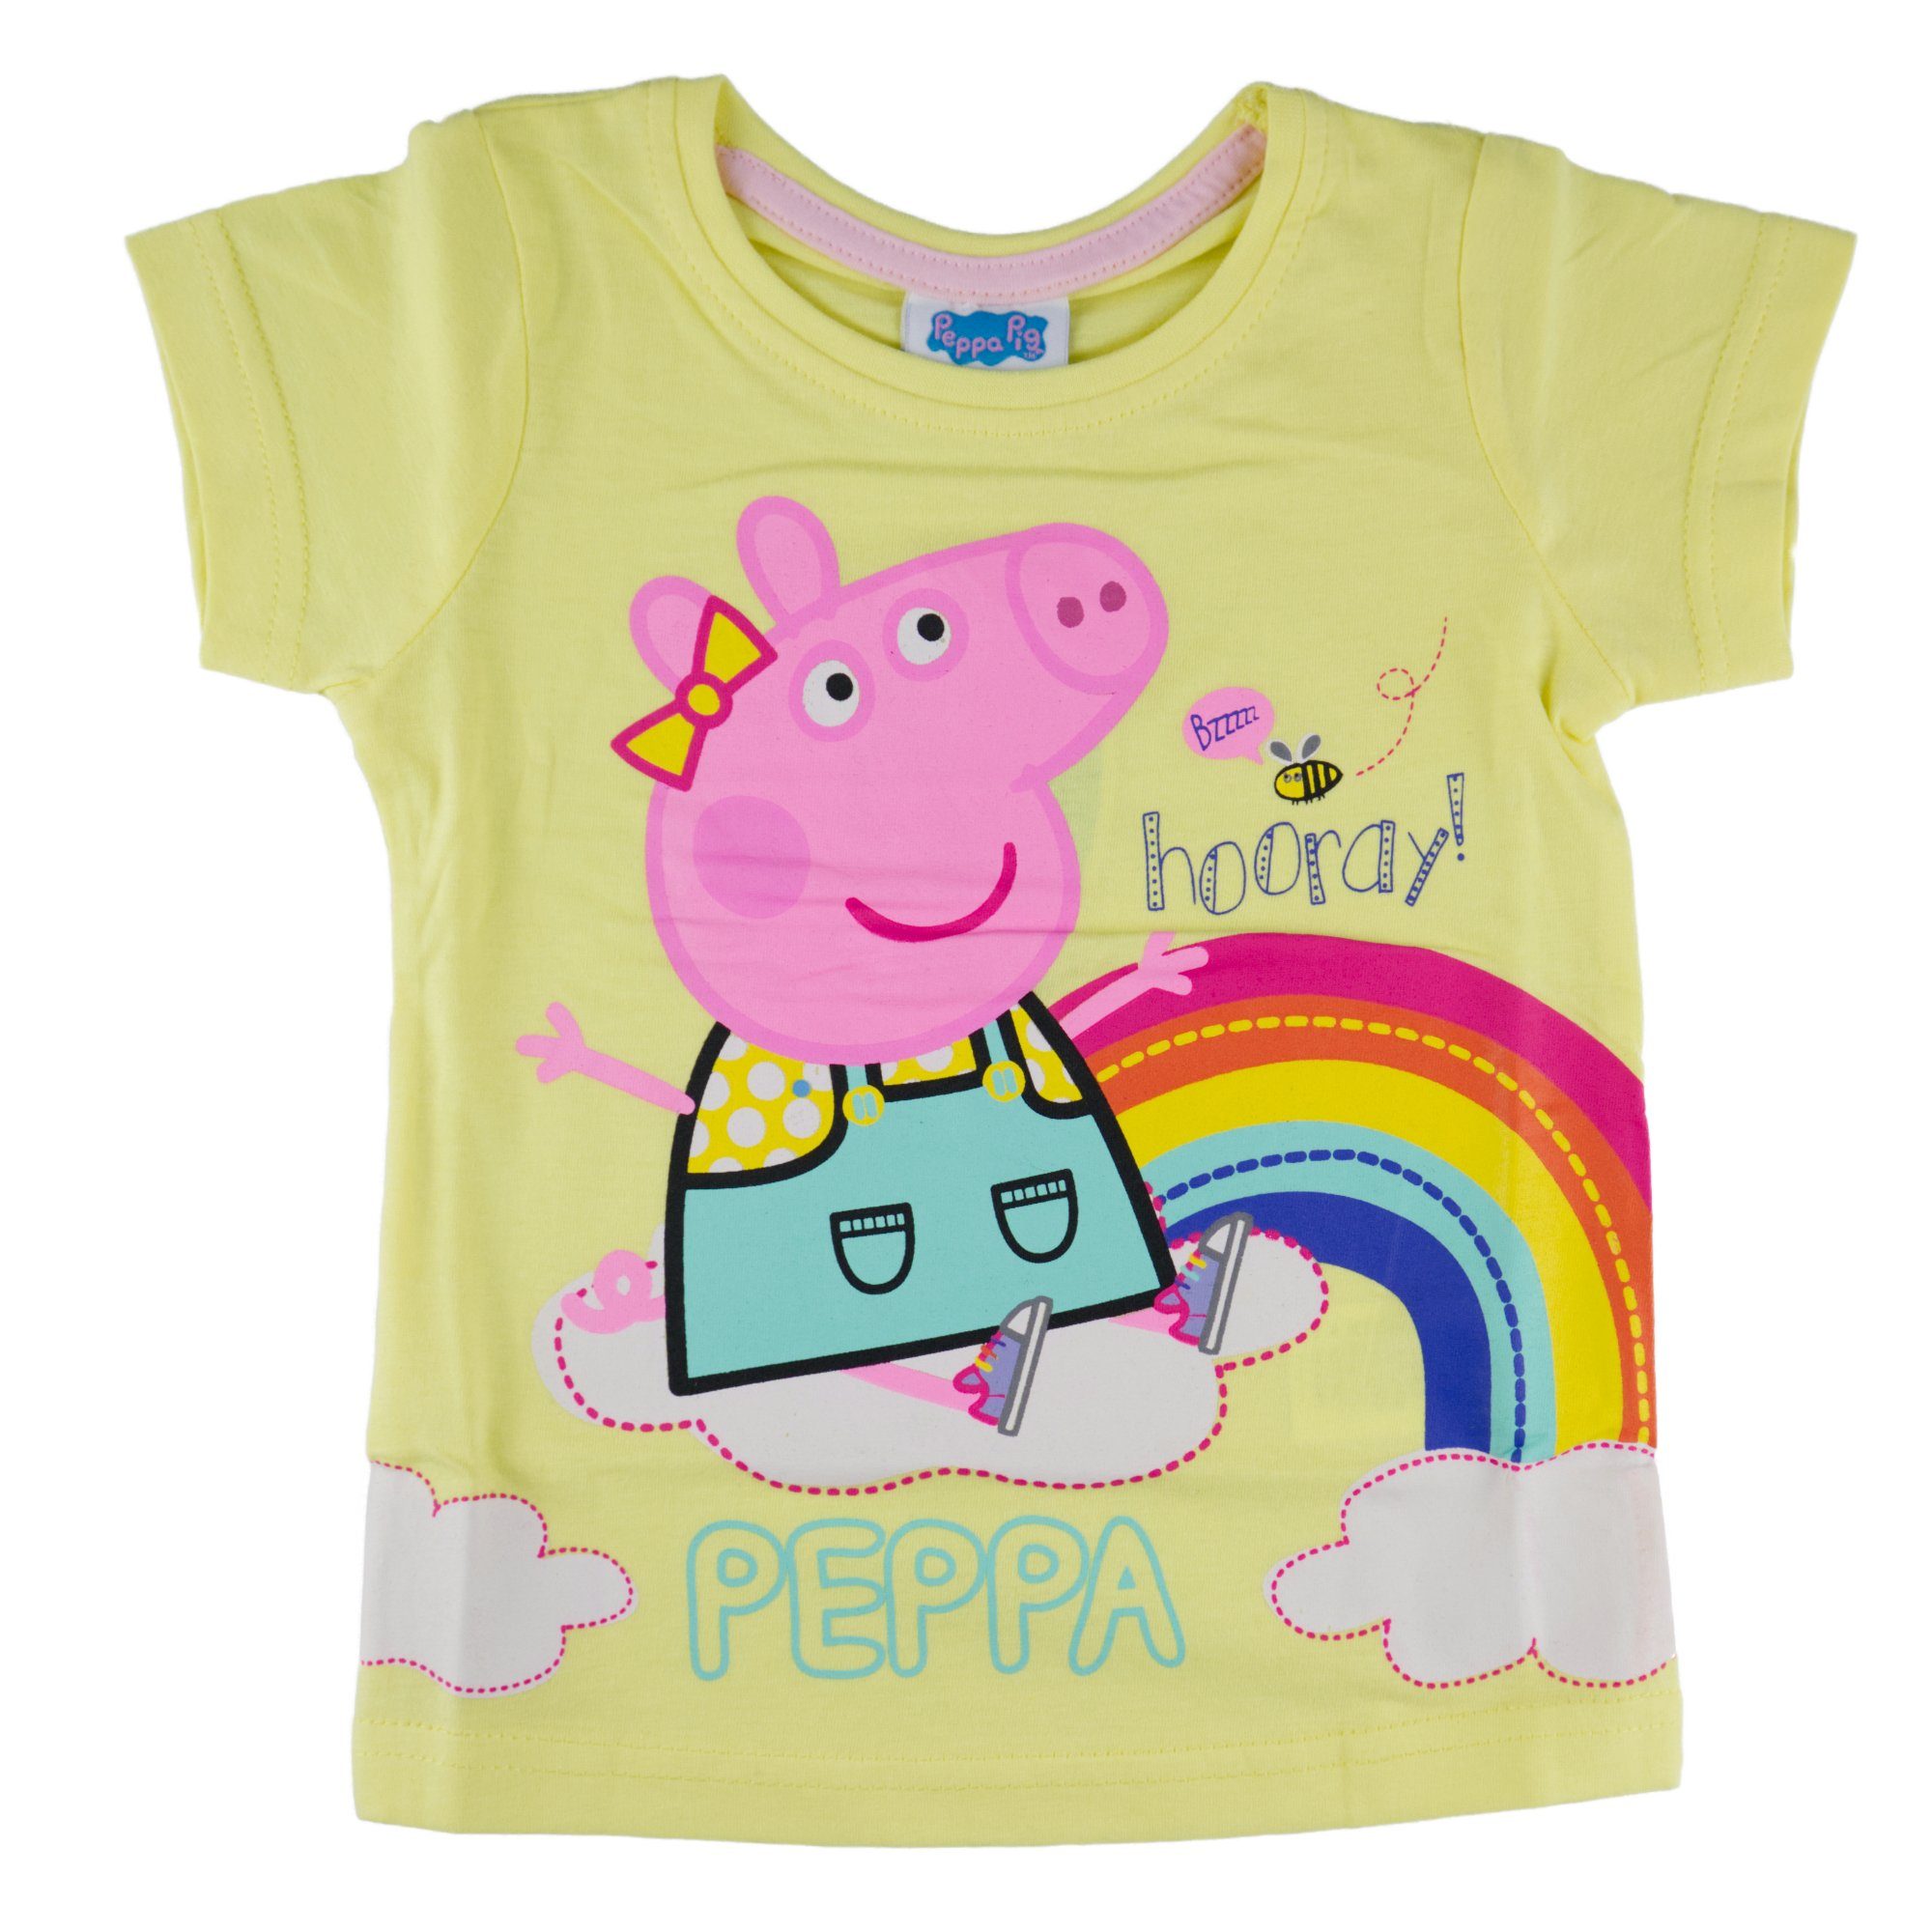 Peppa Pig Print-Shirt »Peppa Wutz Kinder T-Shirt« Gr. 92 bis 116, 100%  Baumwolle online kaufen | OTTO